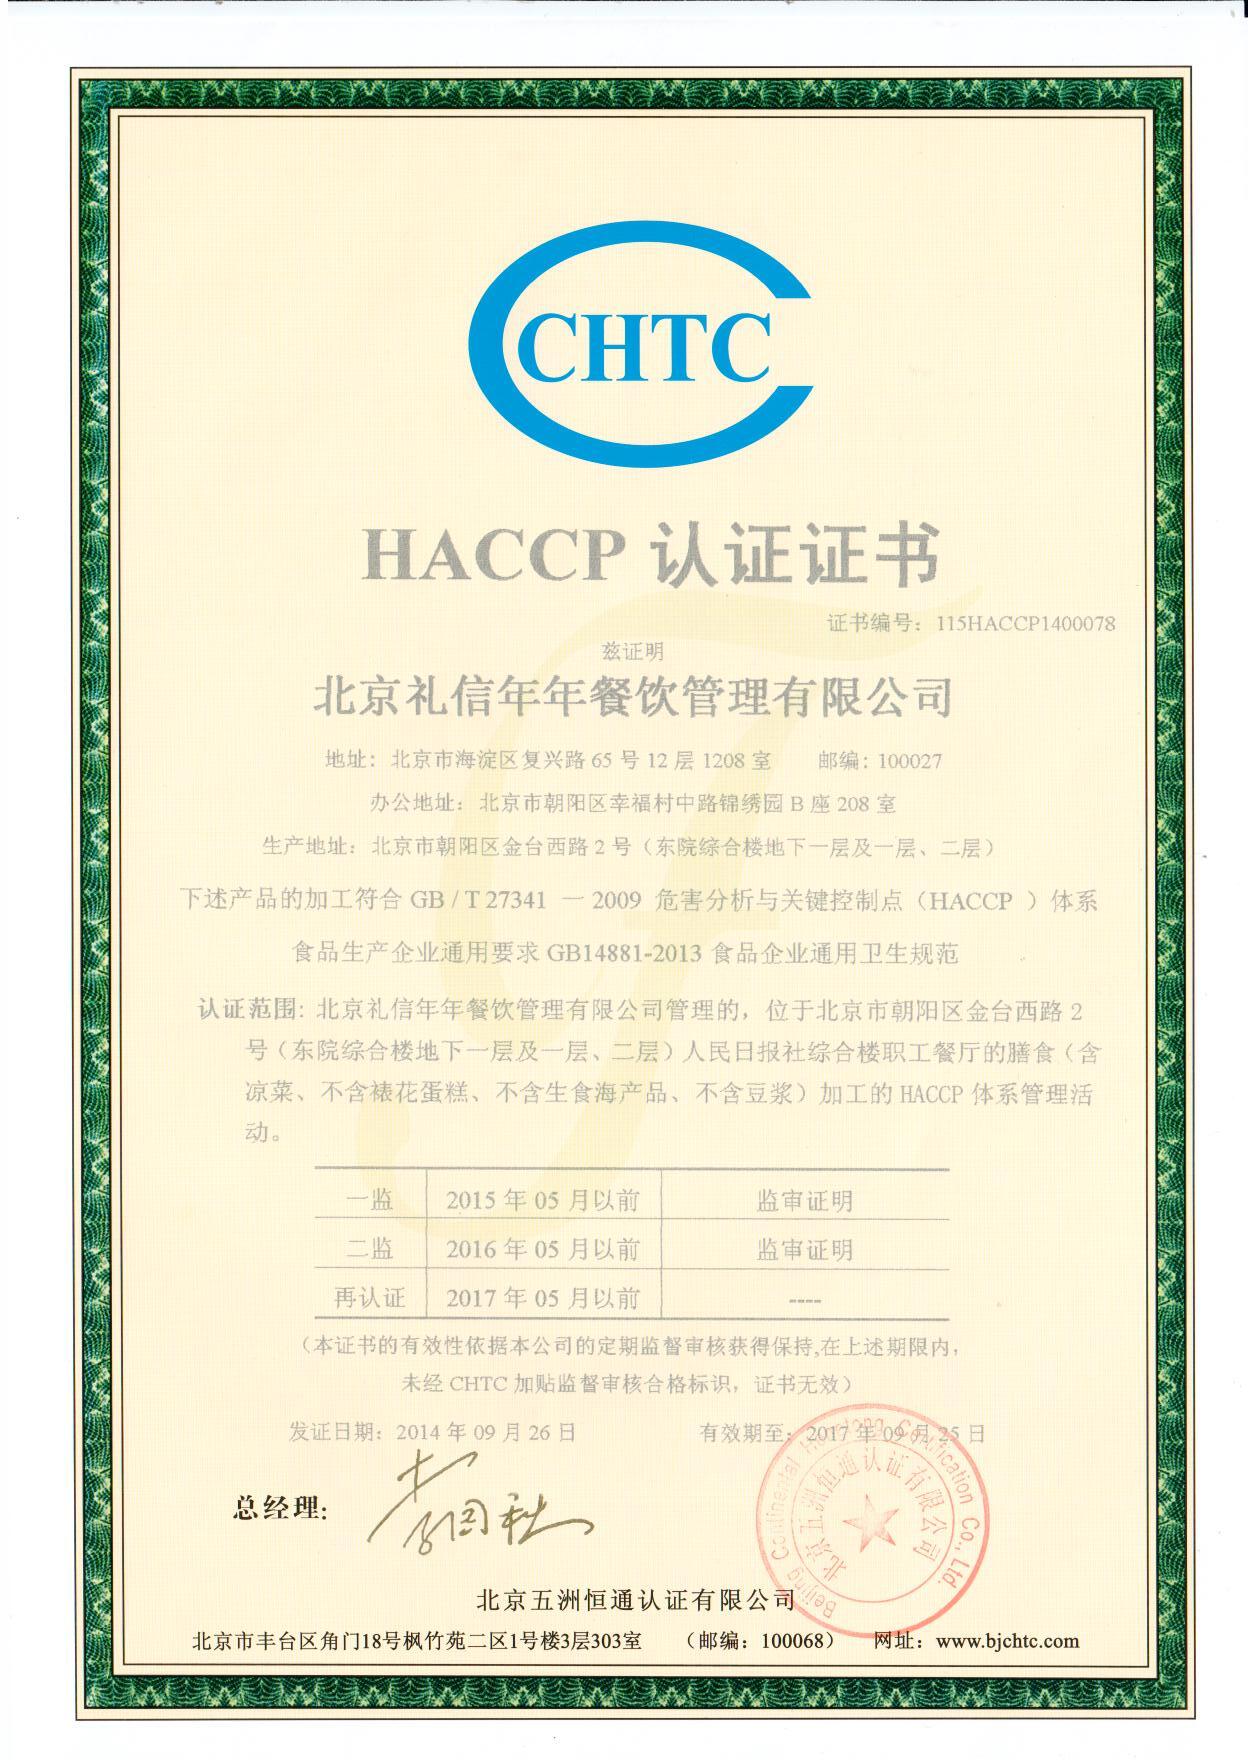 说明: C:\Users\倩颖\Desktop\HACCP认证证书中文.jpg